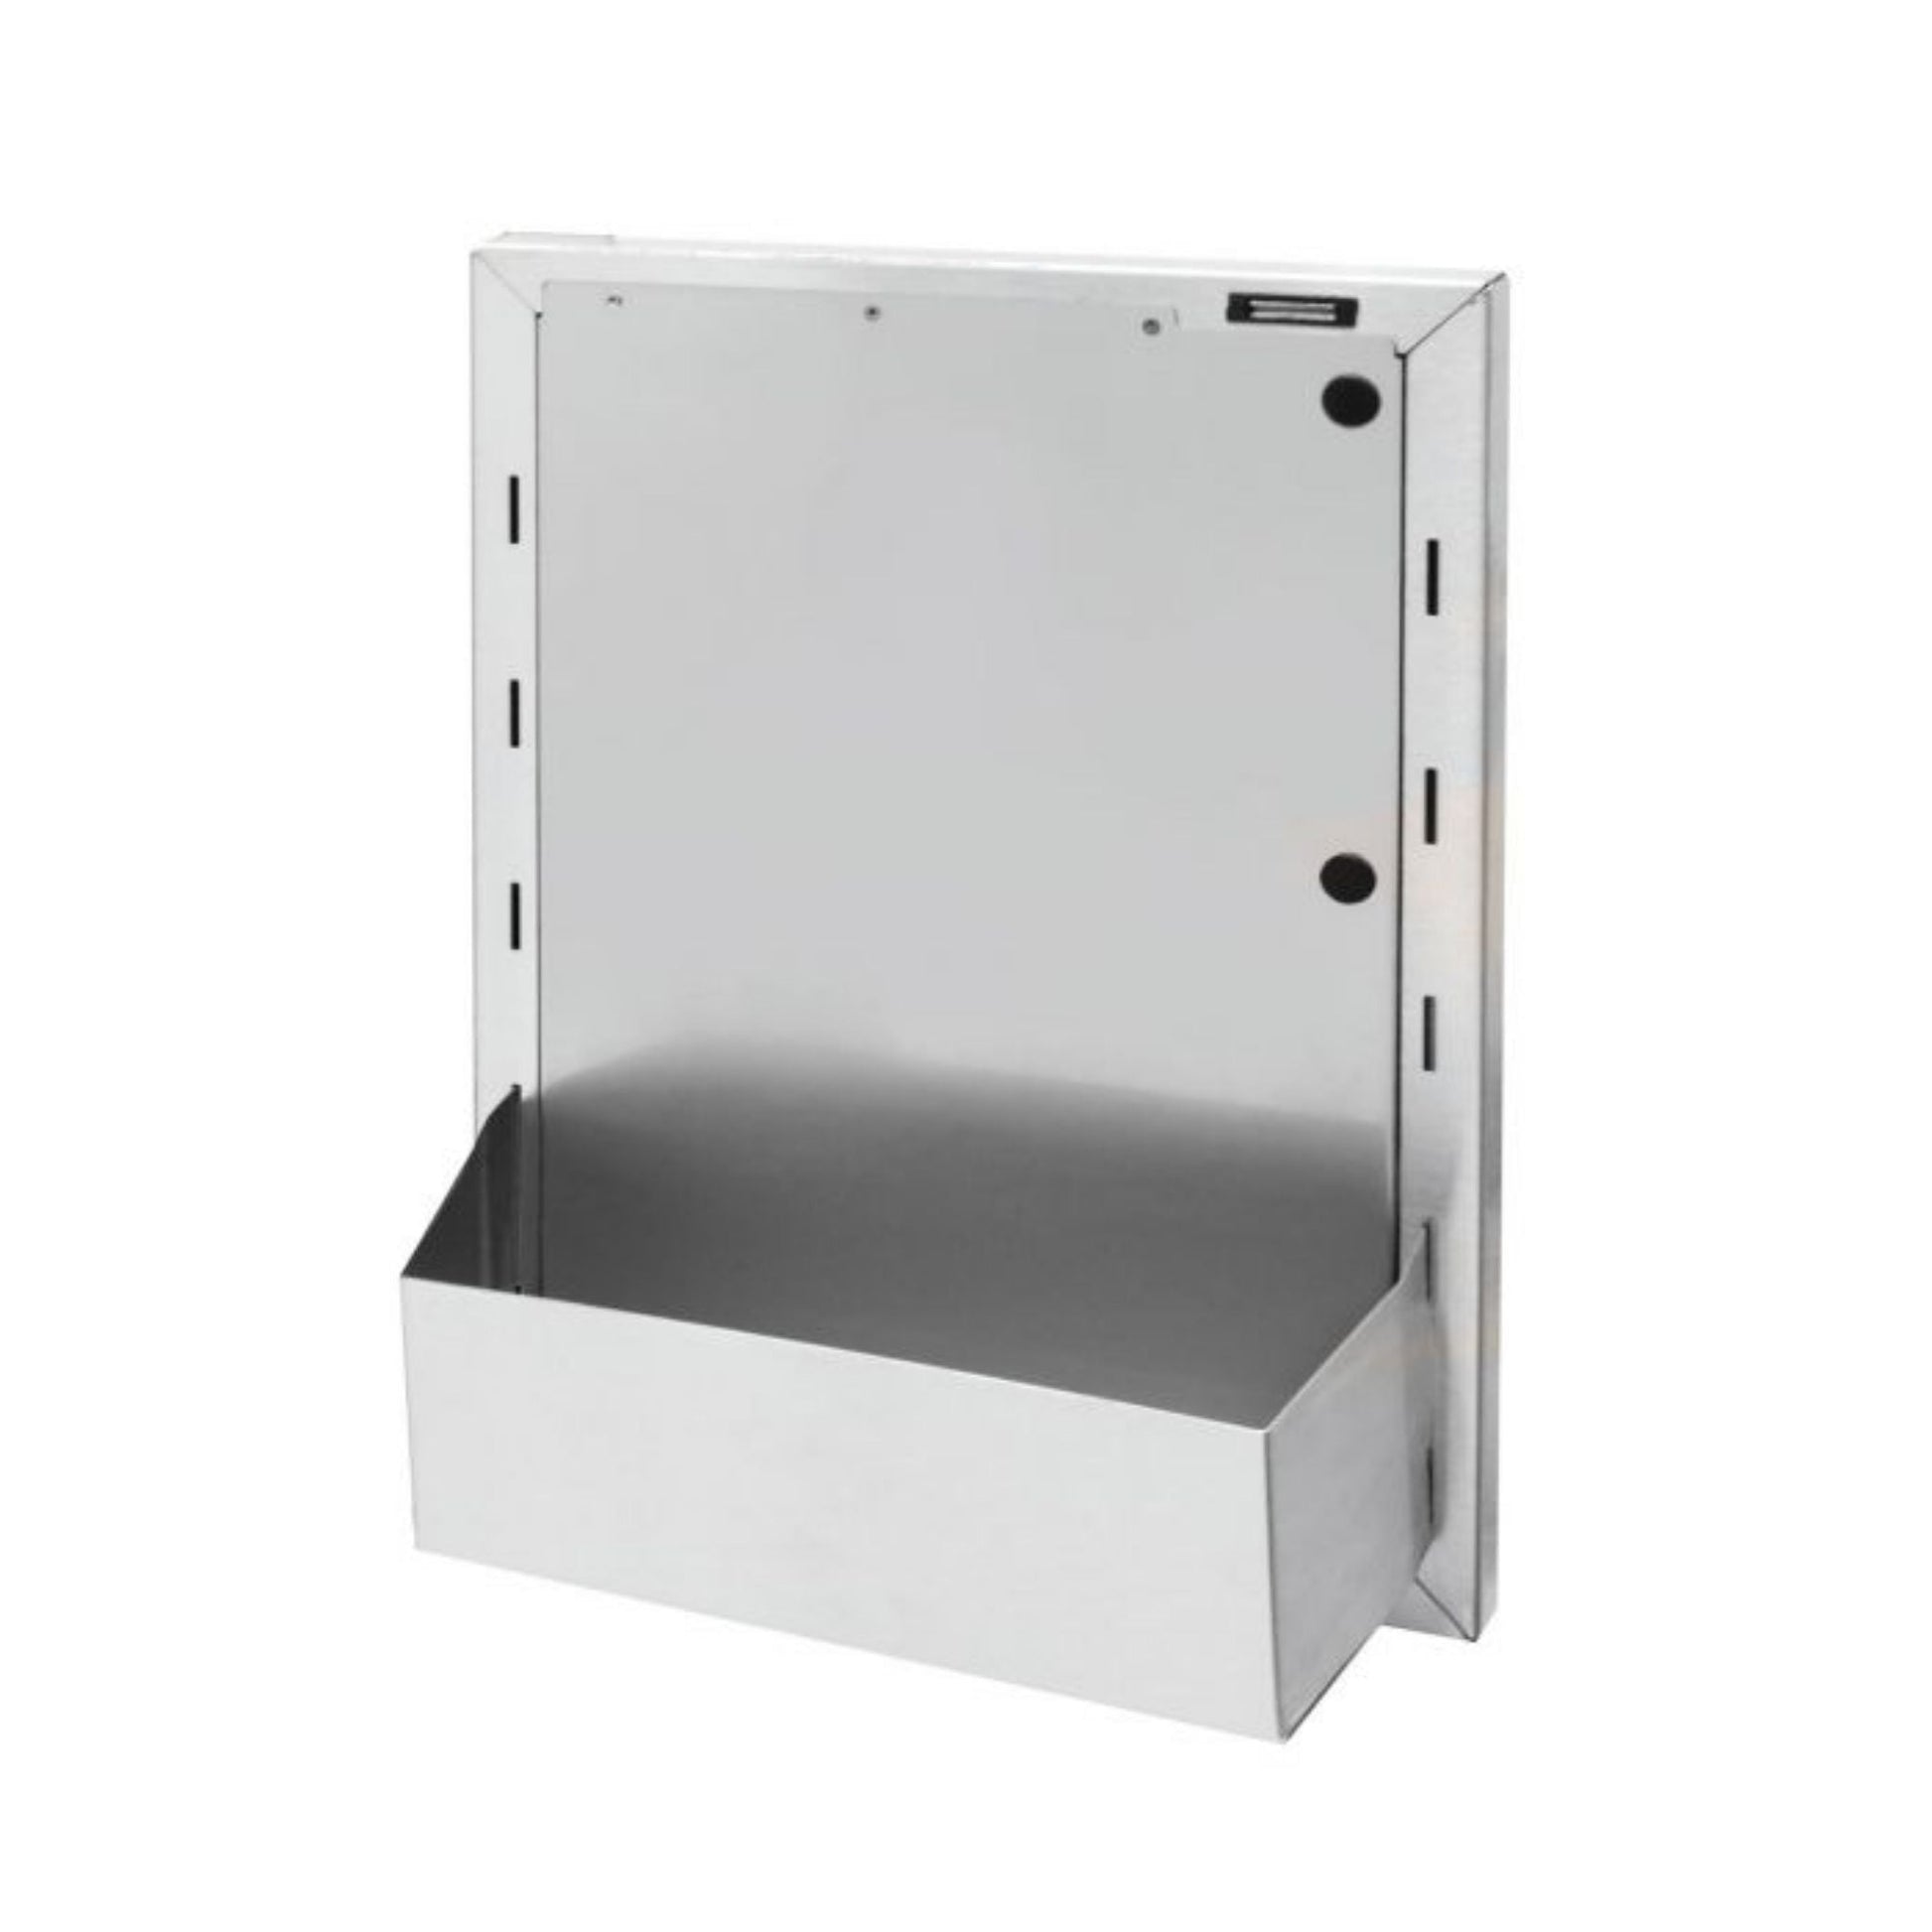 Alfresco Accessory Door Bin for AXE-30-USA (2 required)